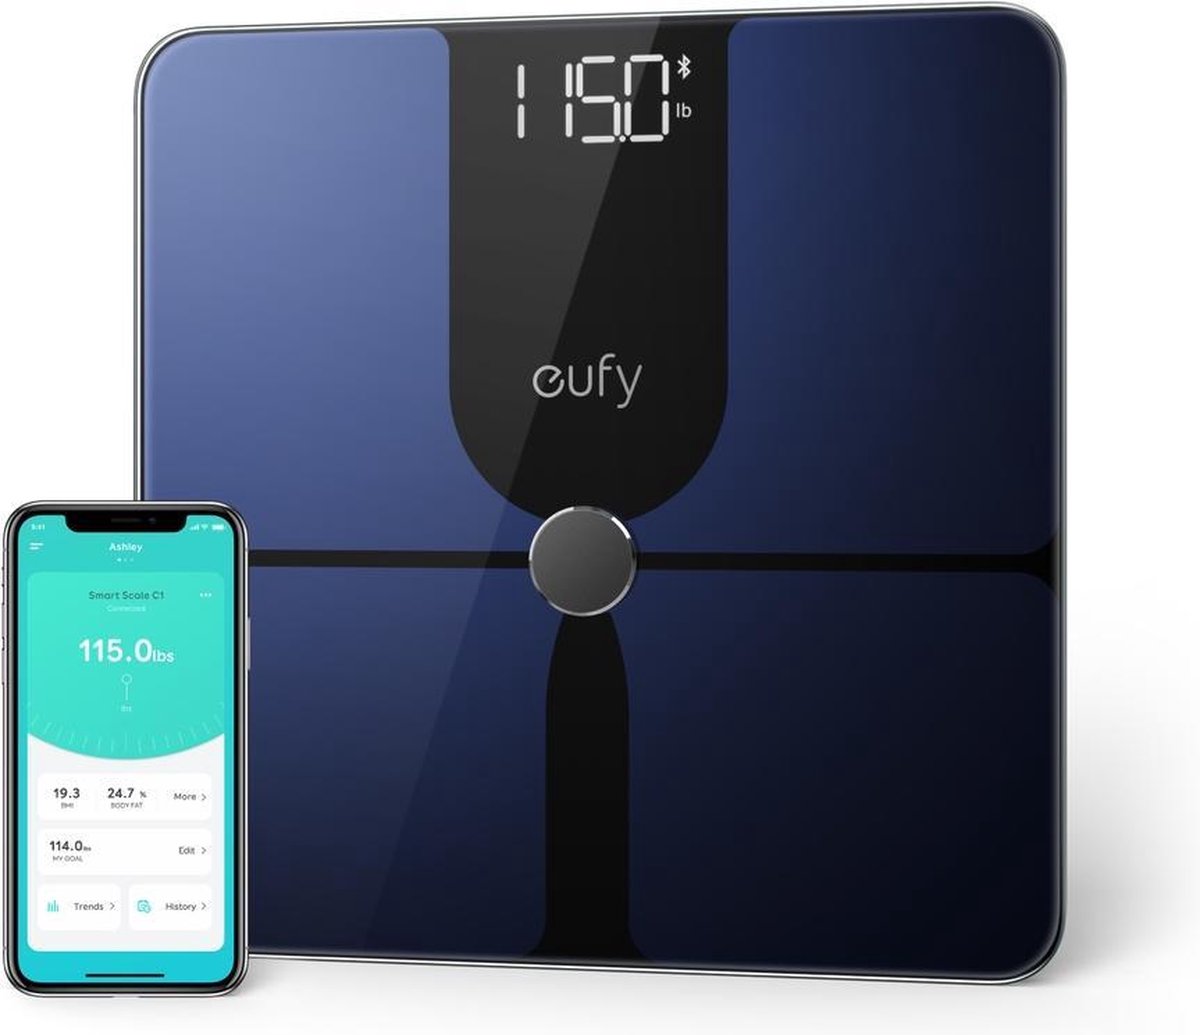 5. Eufy Smart Scale P1